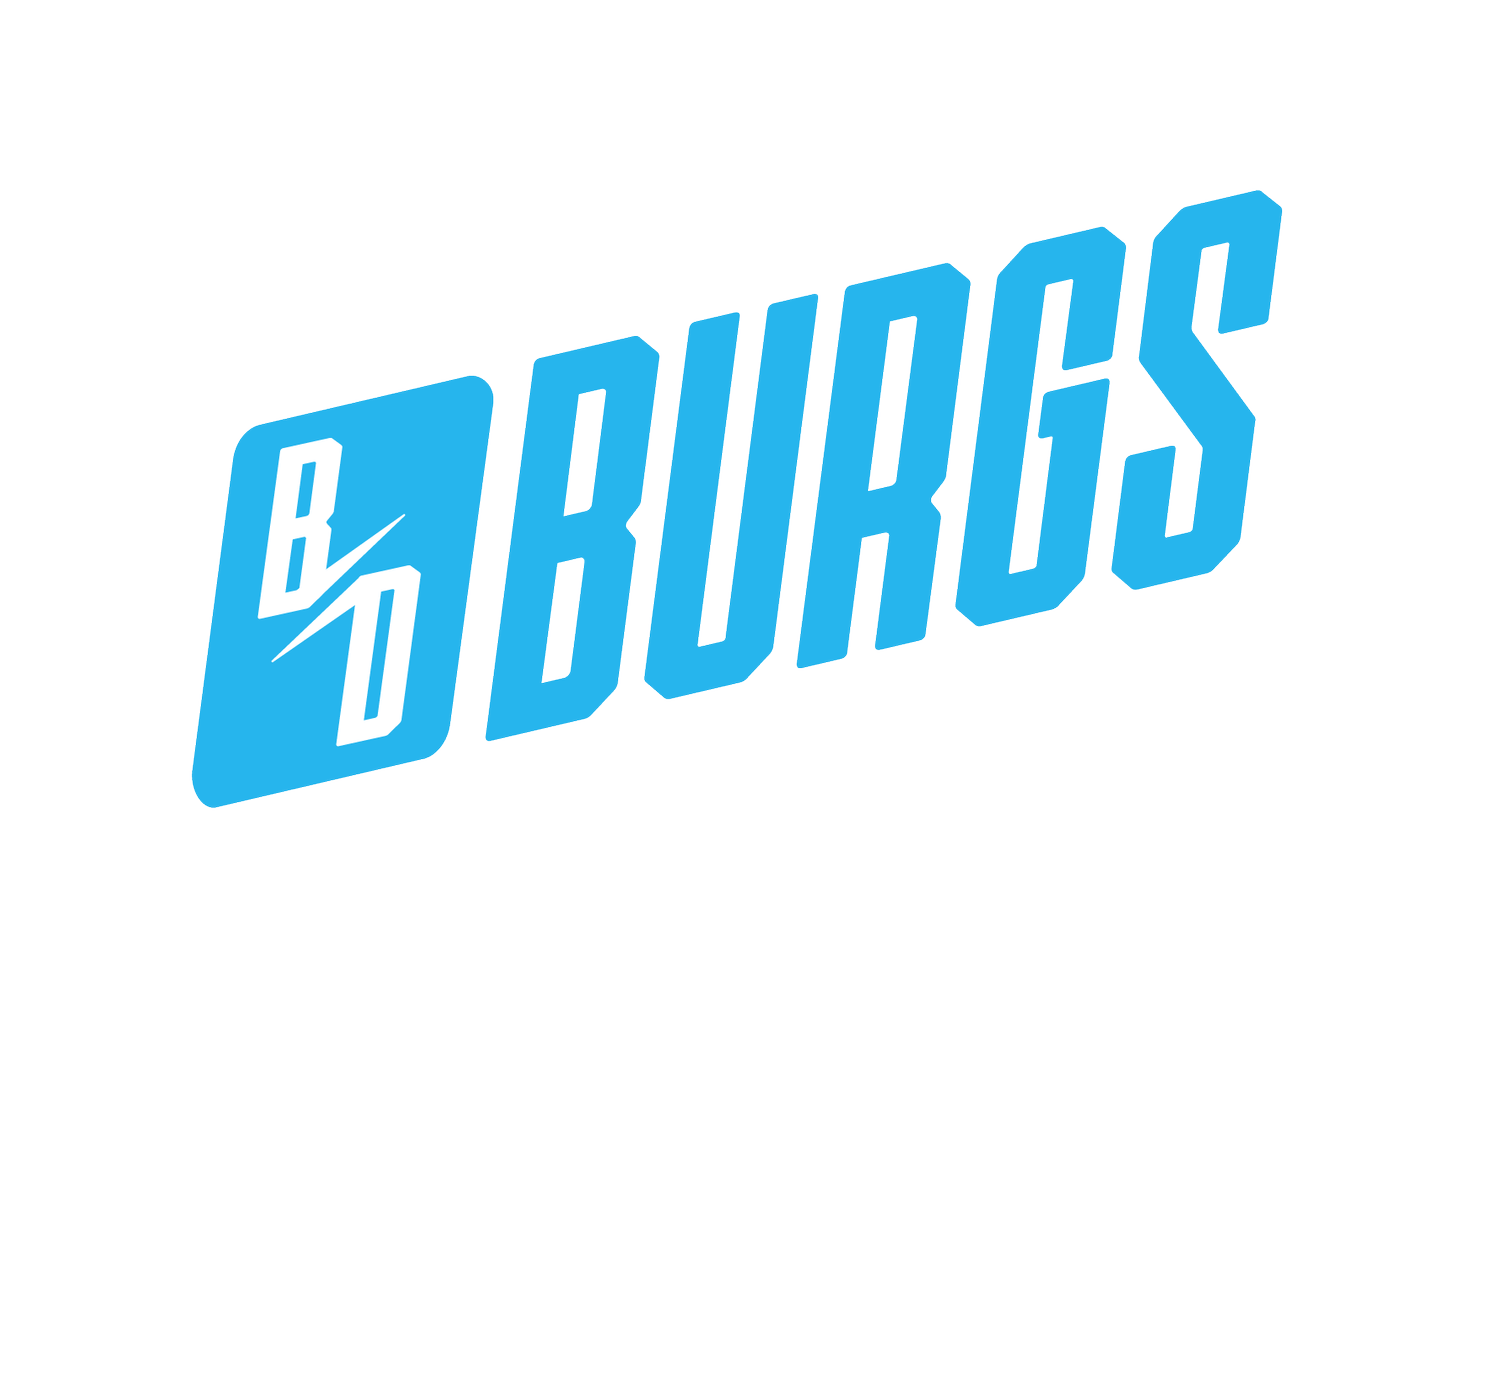 Burgs Digital